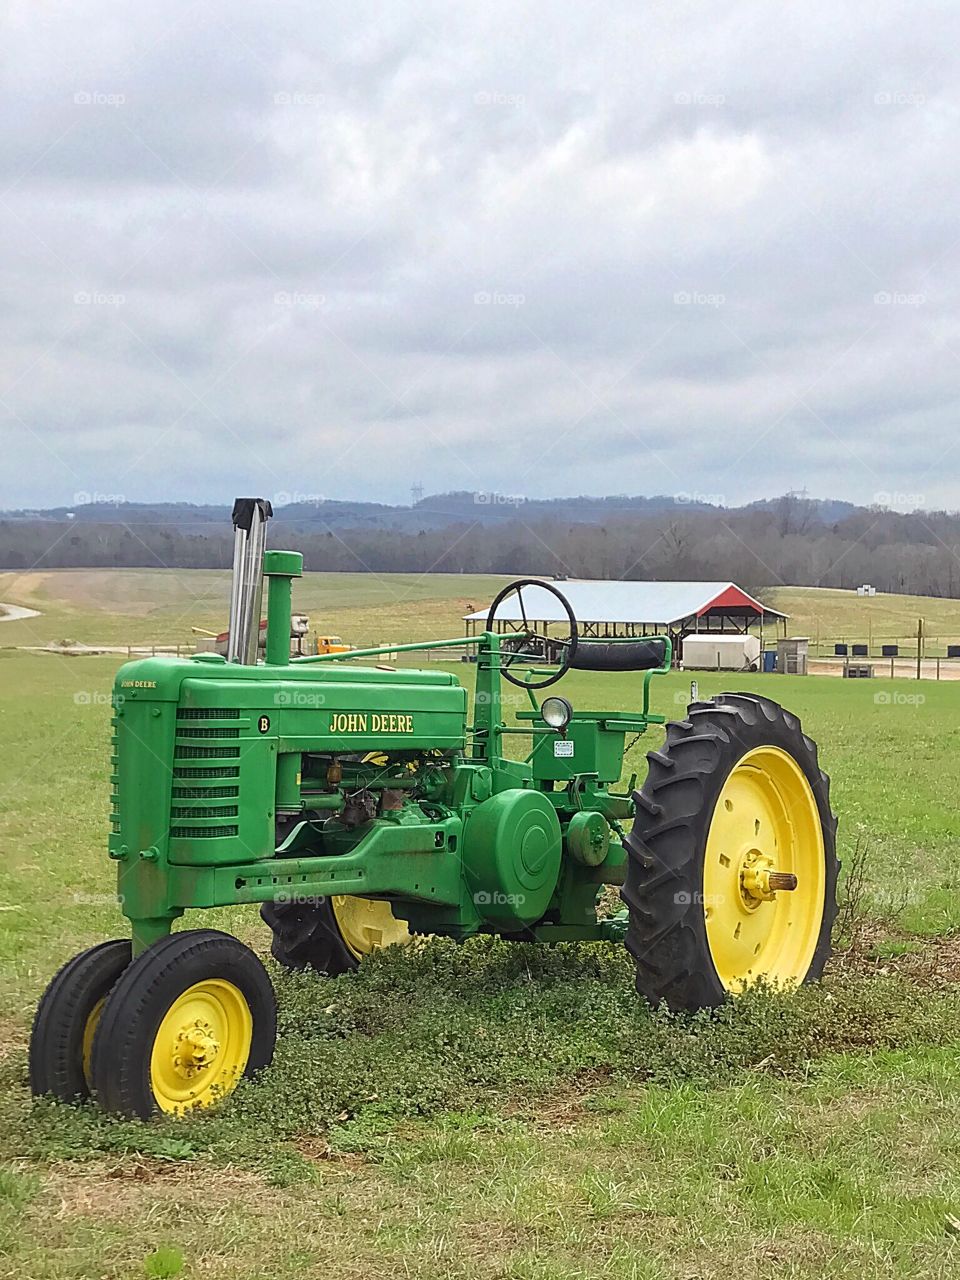 John Deere Tractor on a Hillside Farm